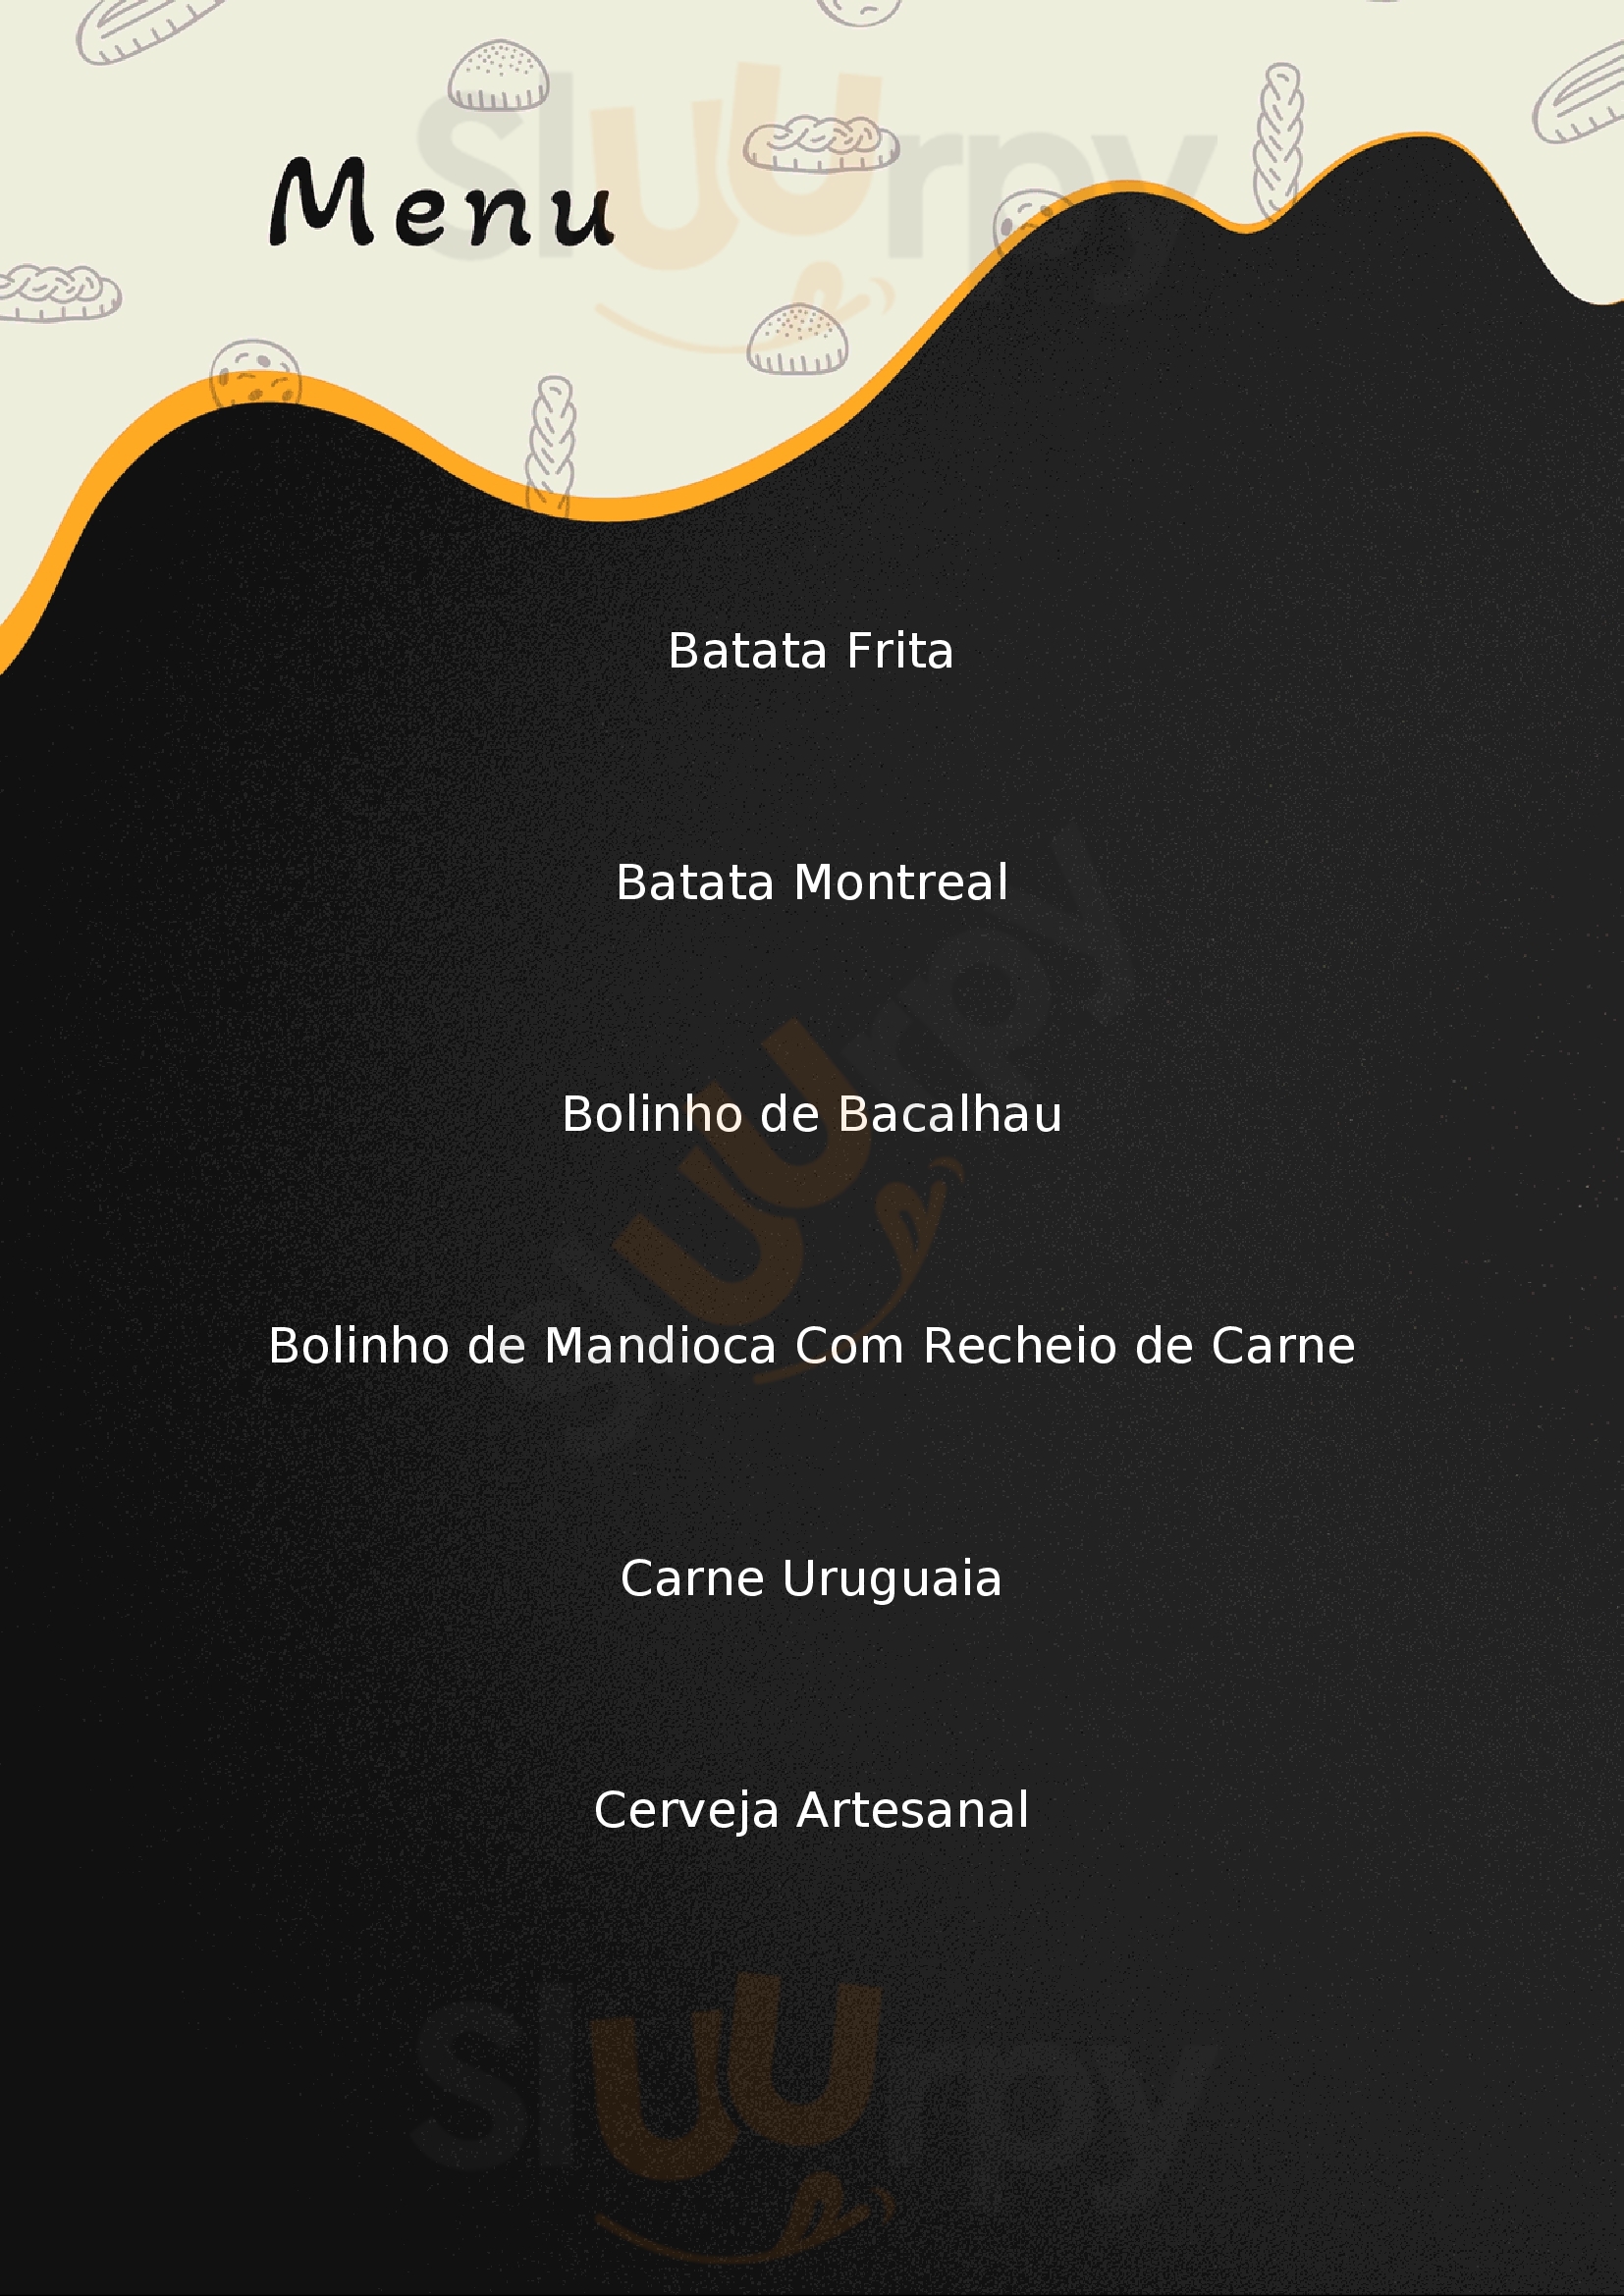 City Restaurante Belo Horizonte Menu - 1